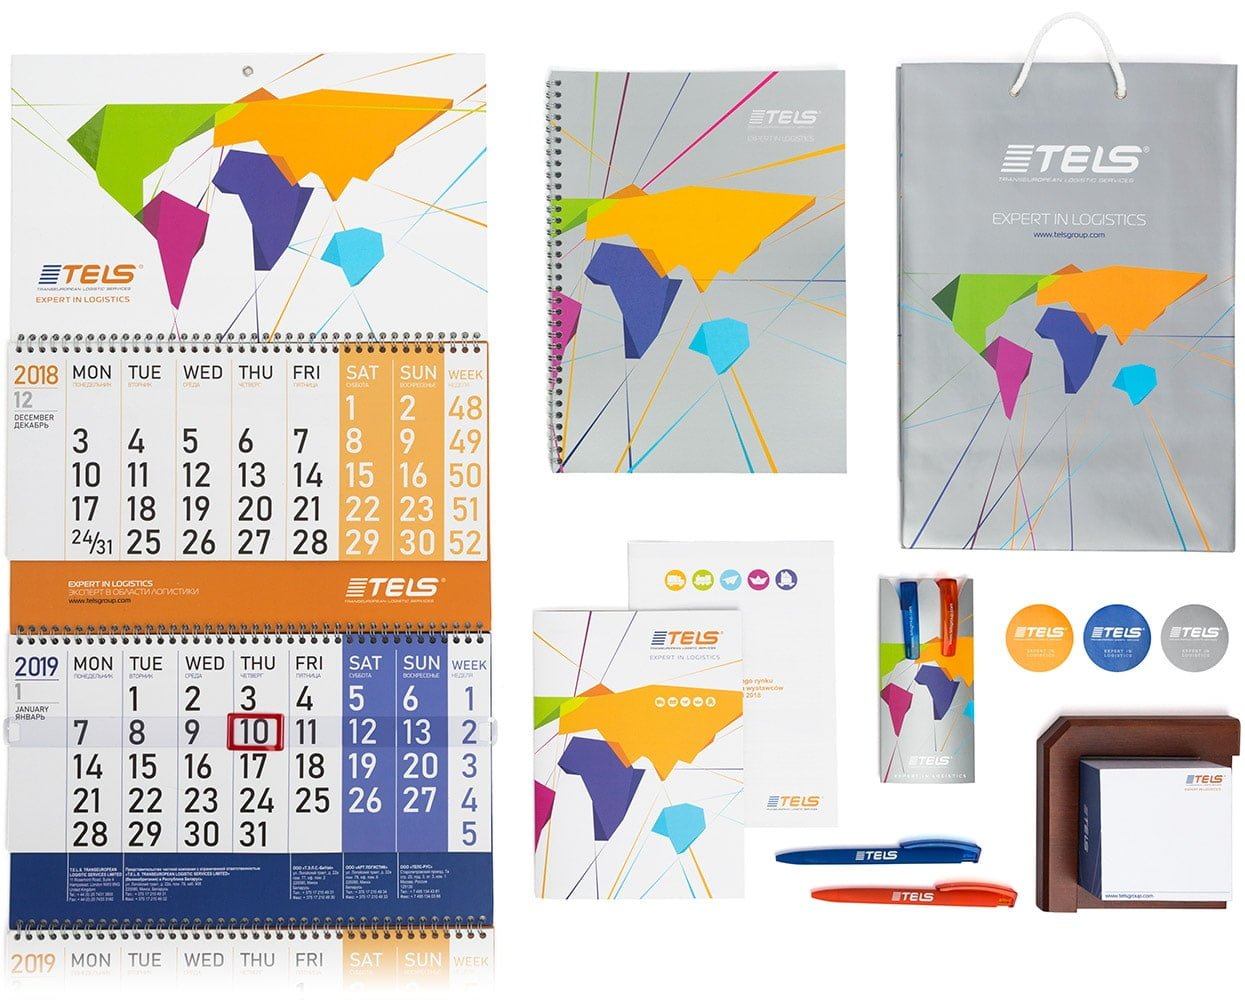 TELS-2019 branding design